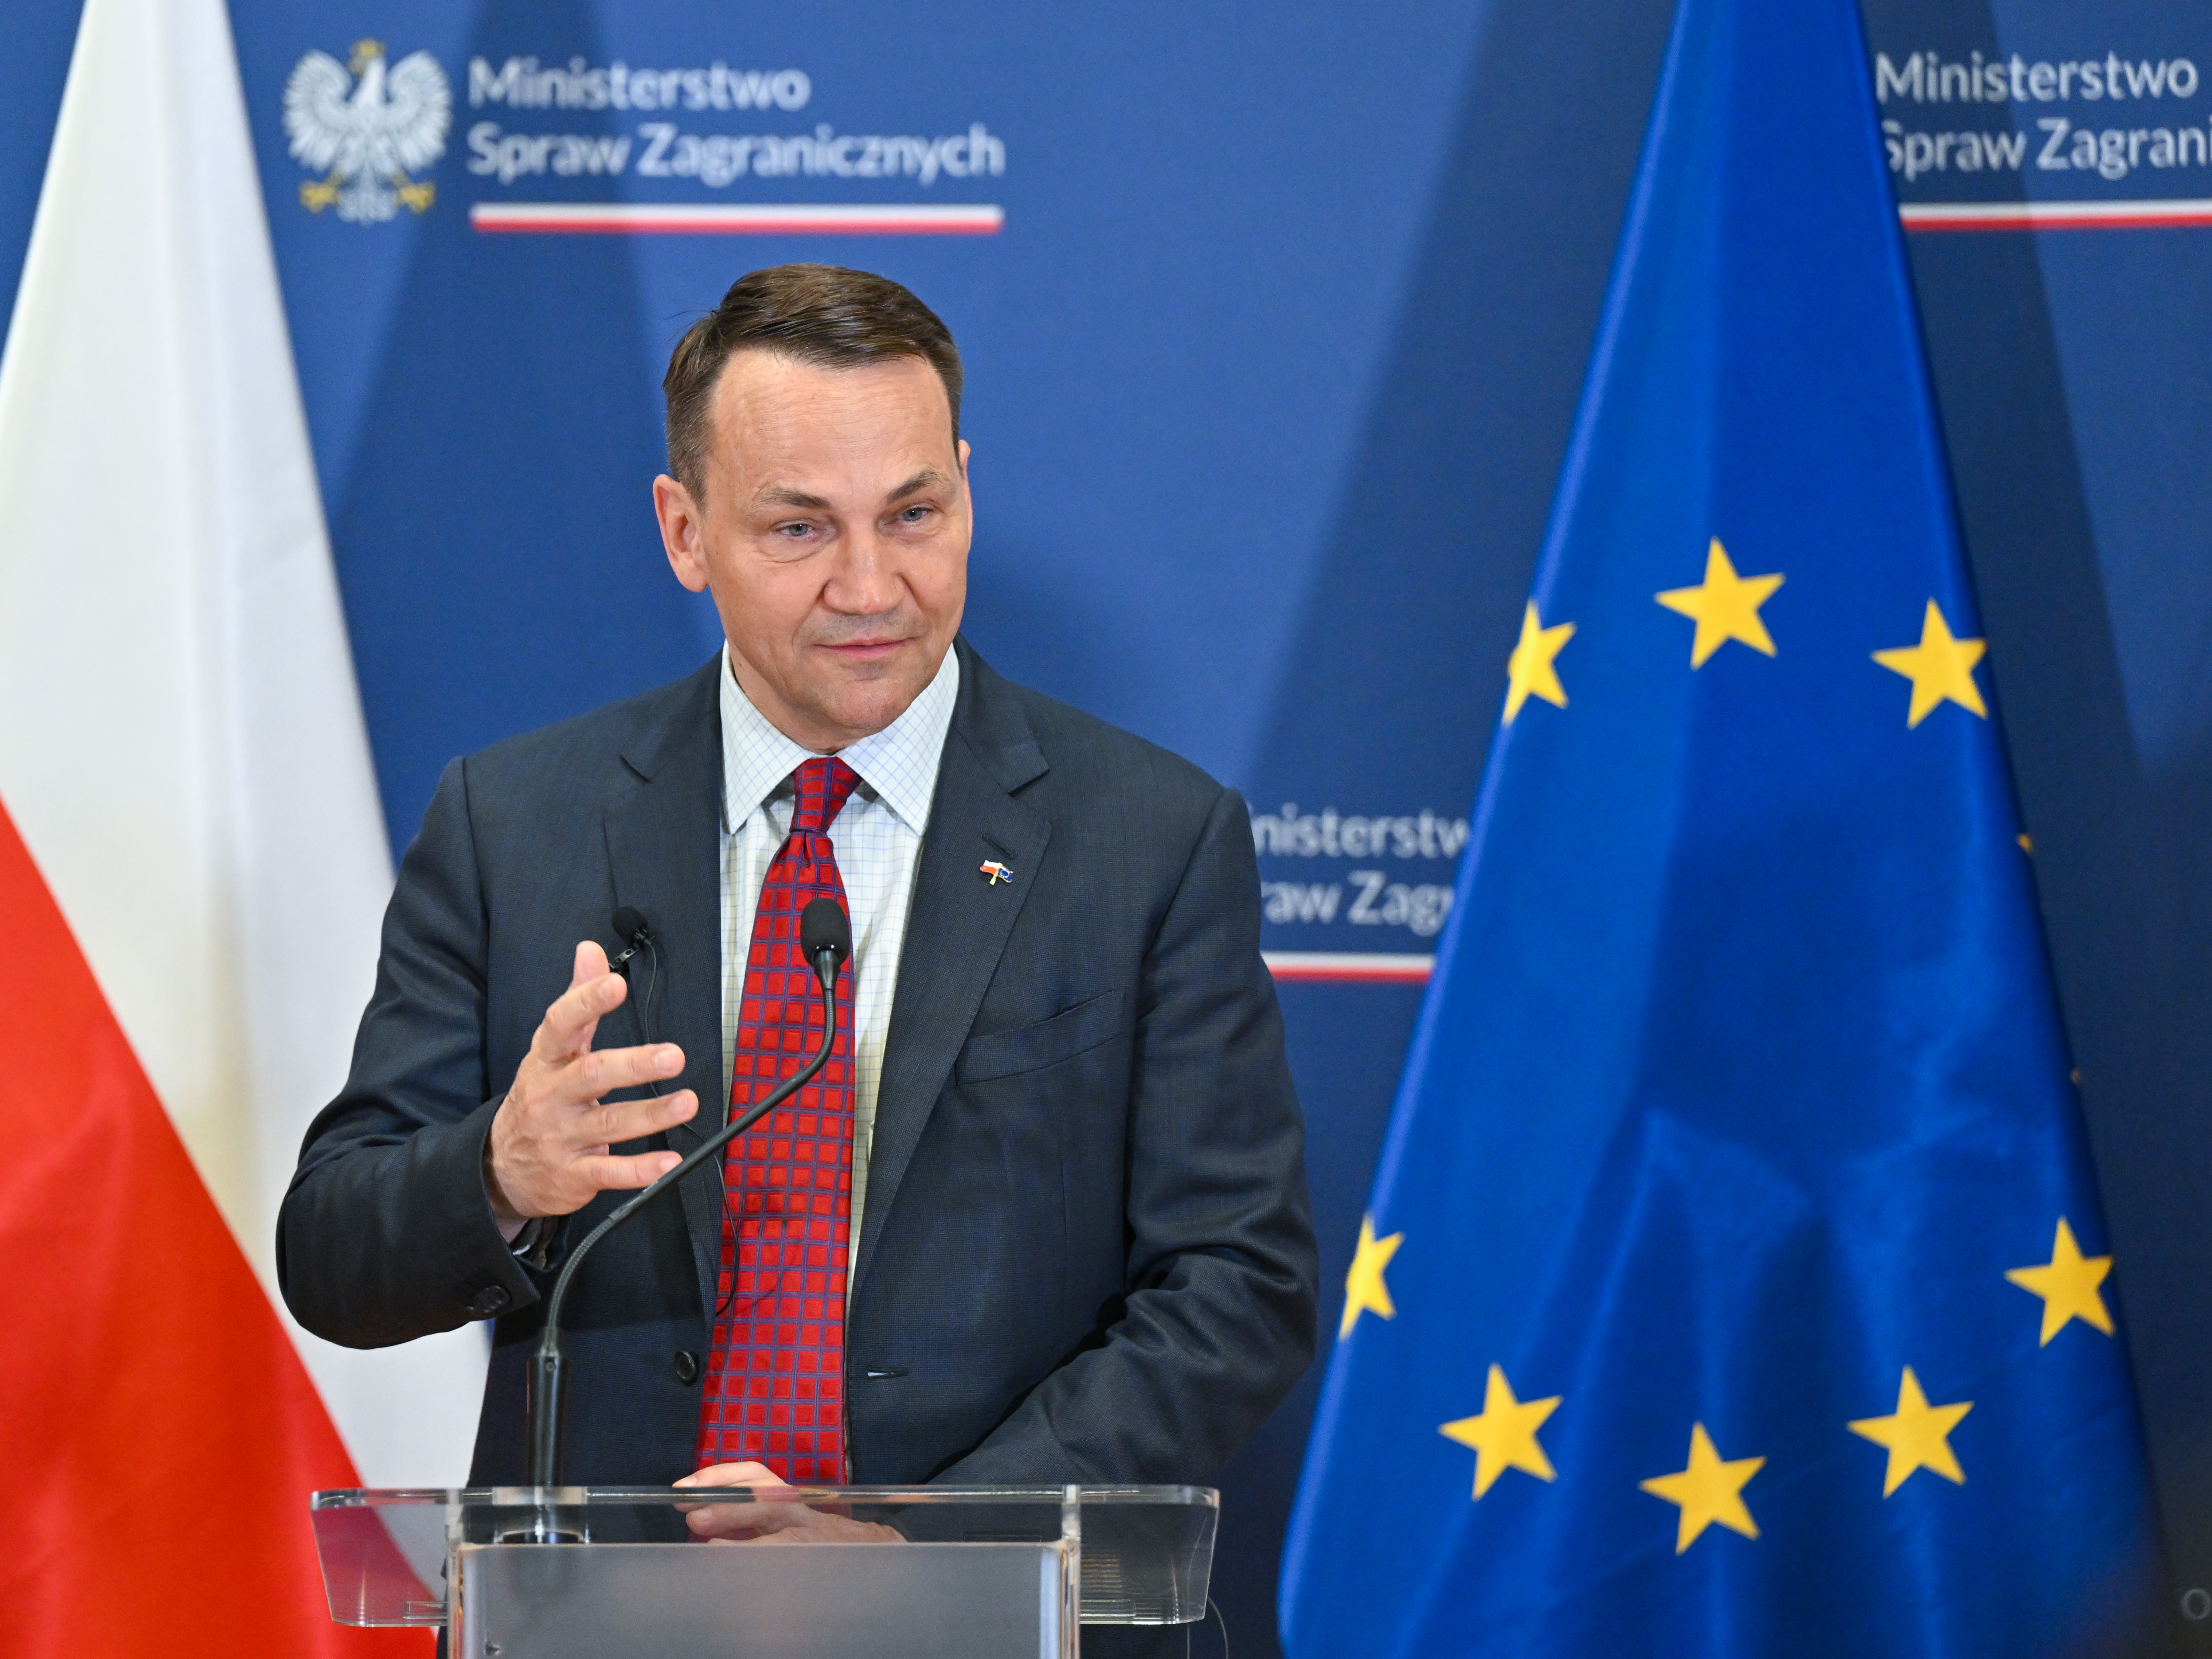 Ministrowie w Polsce: kraj chce lepszych relacji ze Stanami Zjednoczonymi